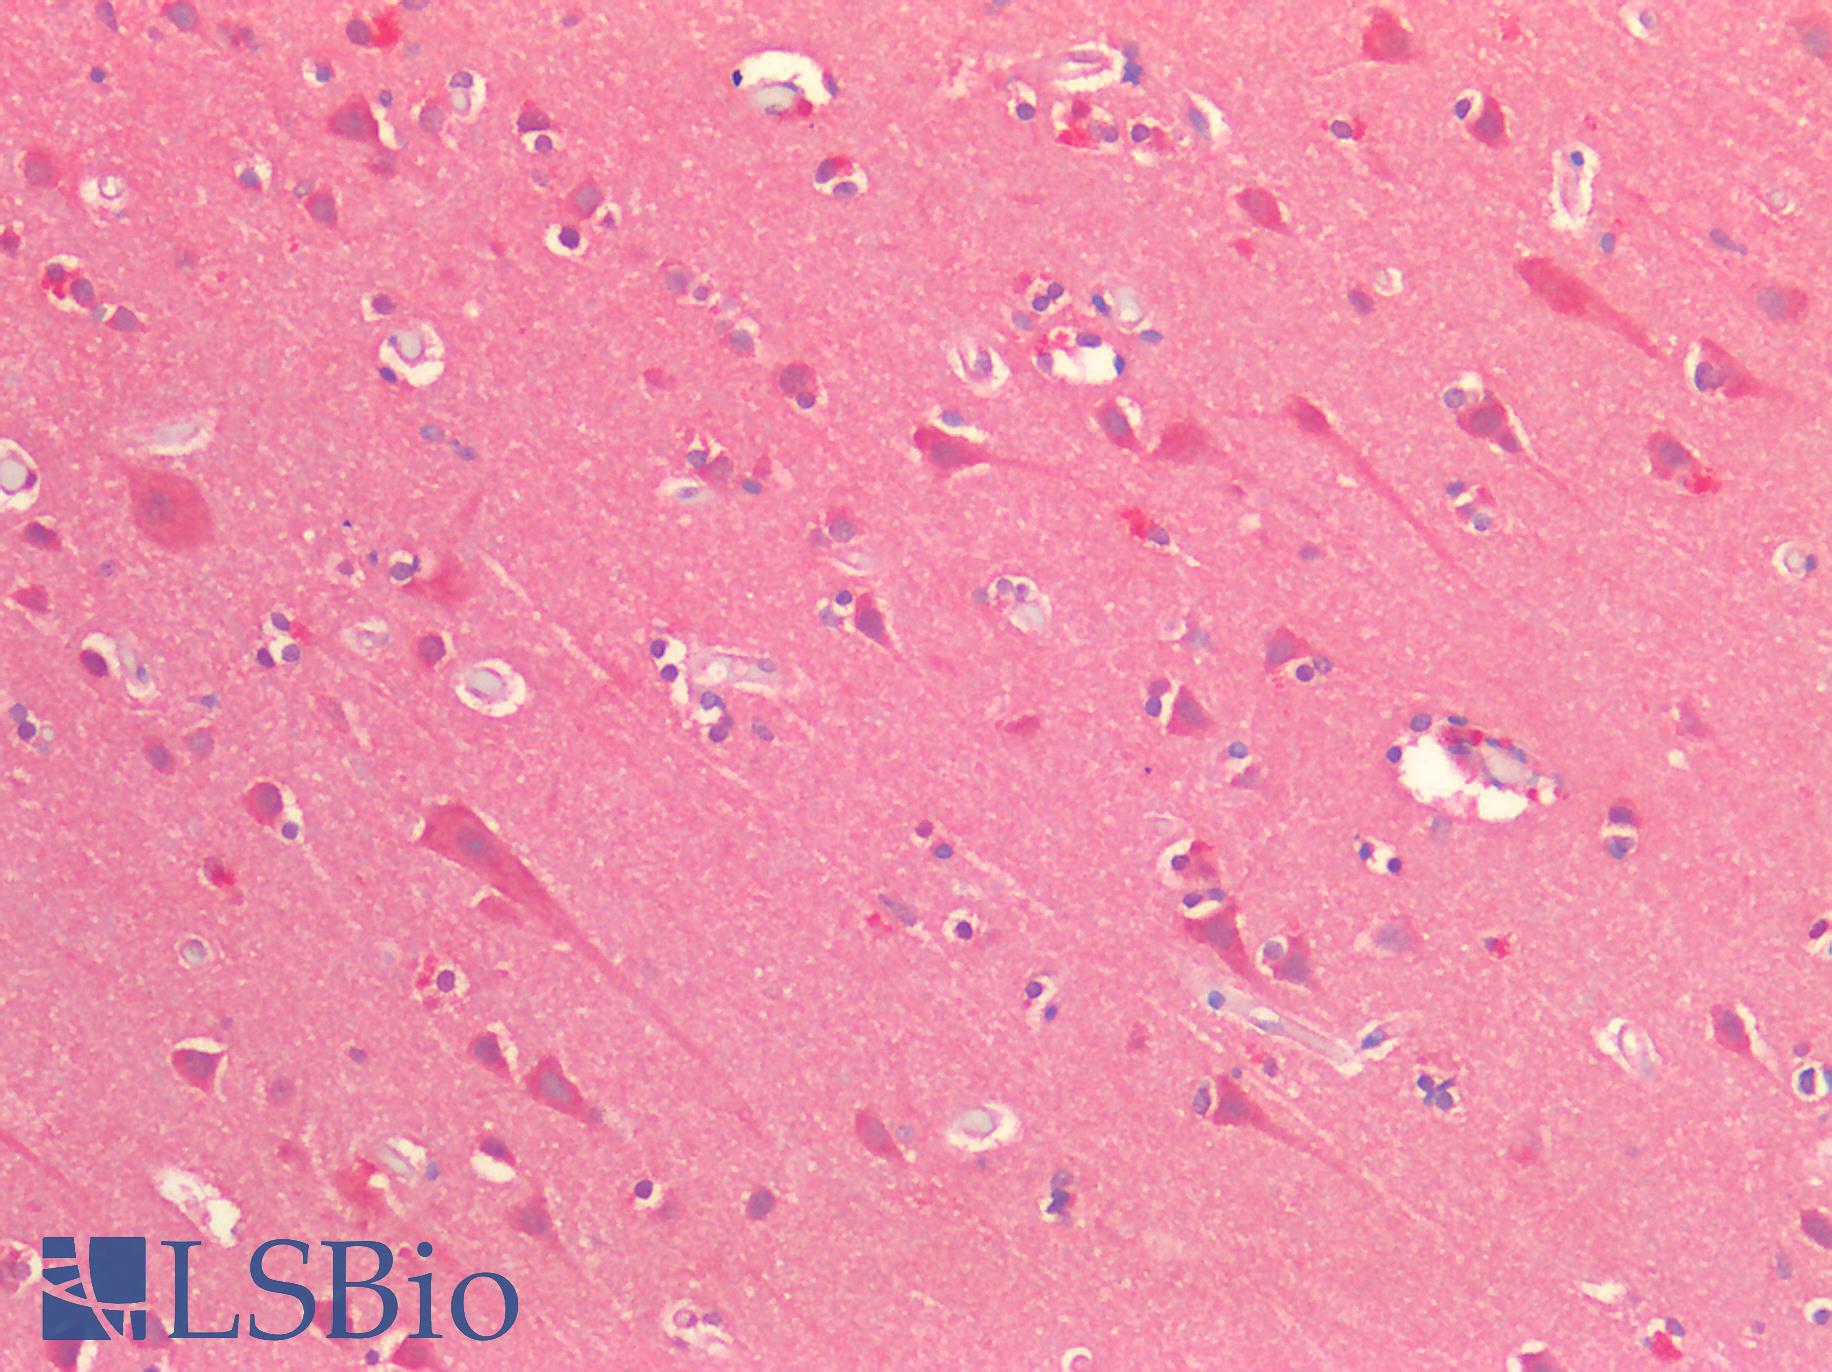 OSMR / IL-31R-Beta Antibody - Human Brain, Cortex: Formalin-Fixed, Paraffin-Embedded (FFPE)